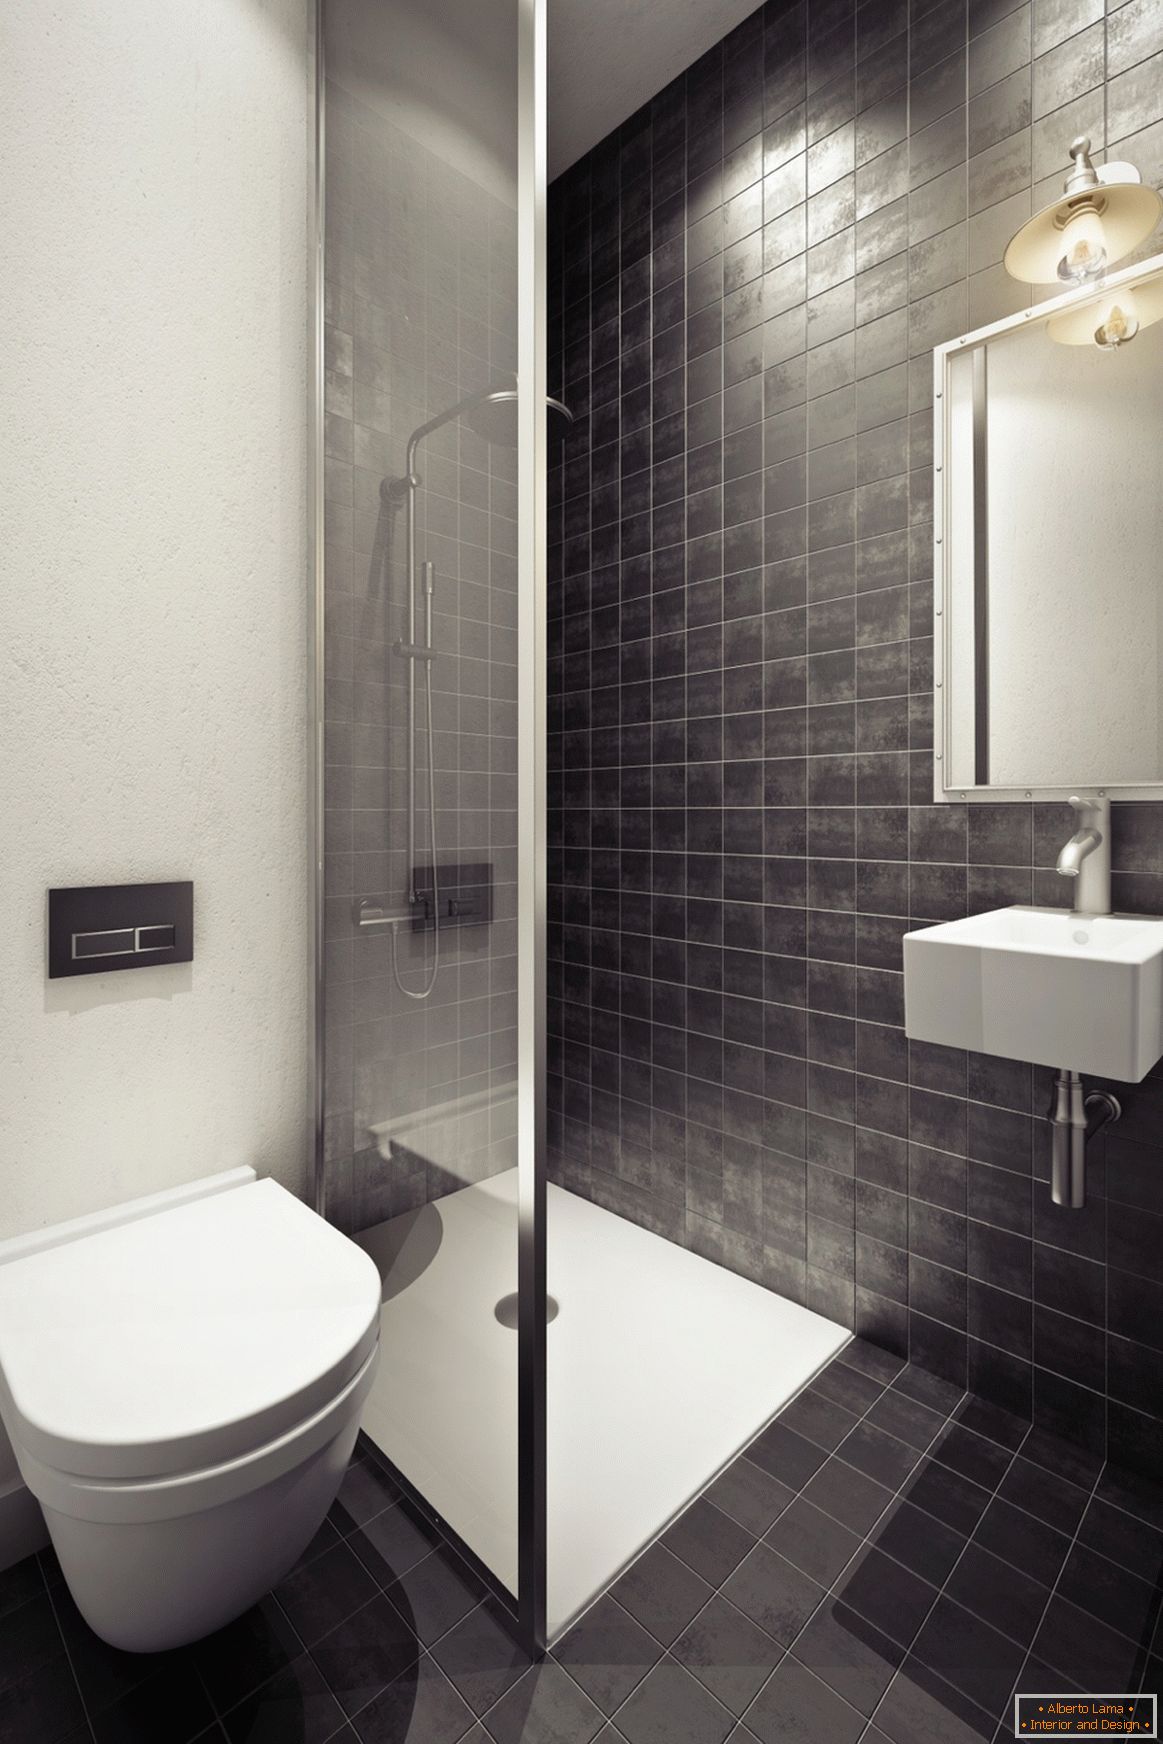 Zasnova kopalnice v sivih tonih